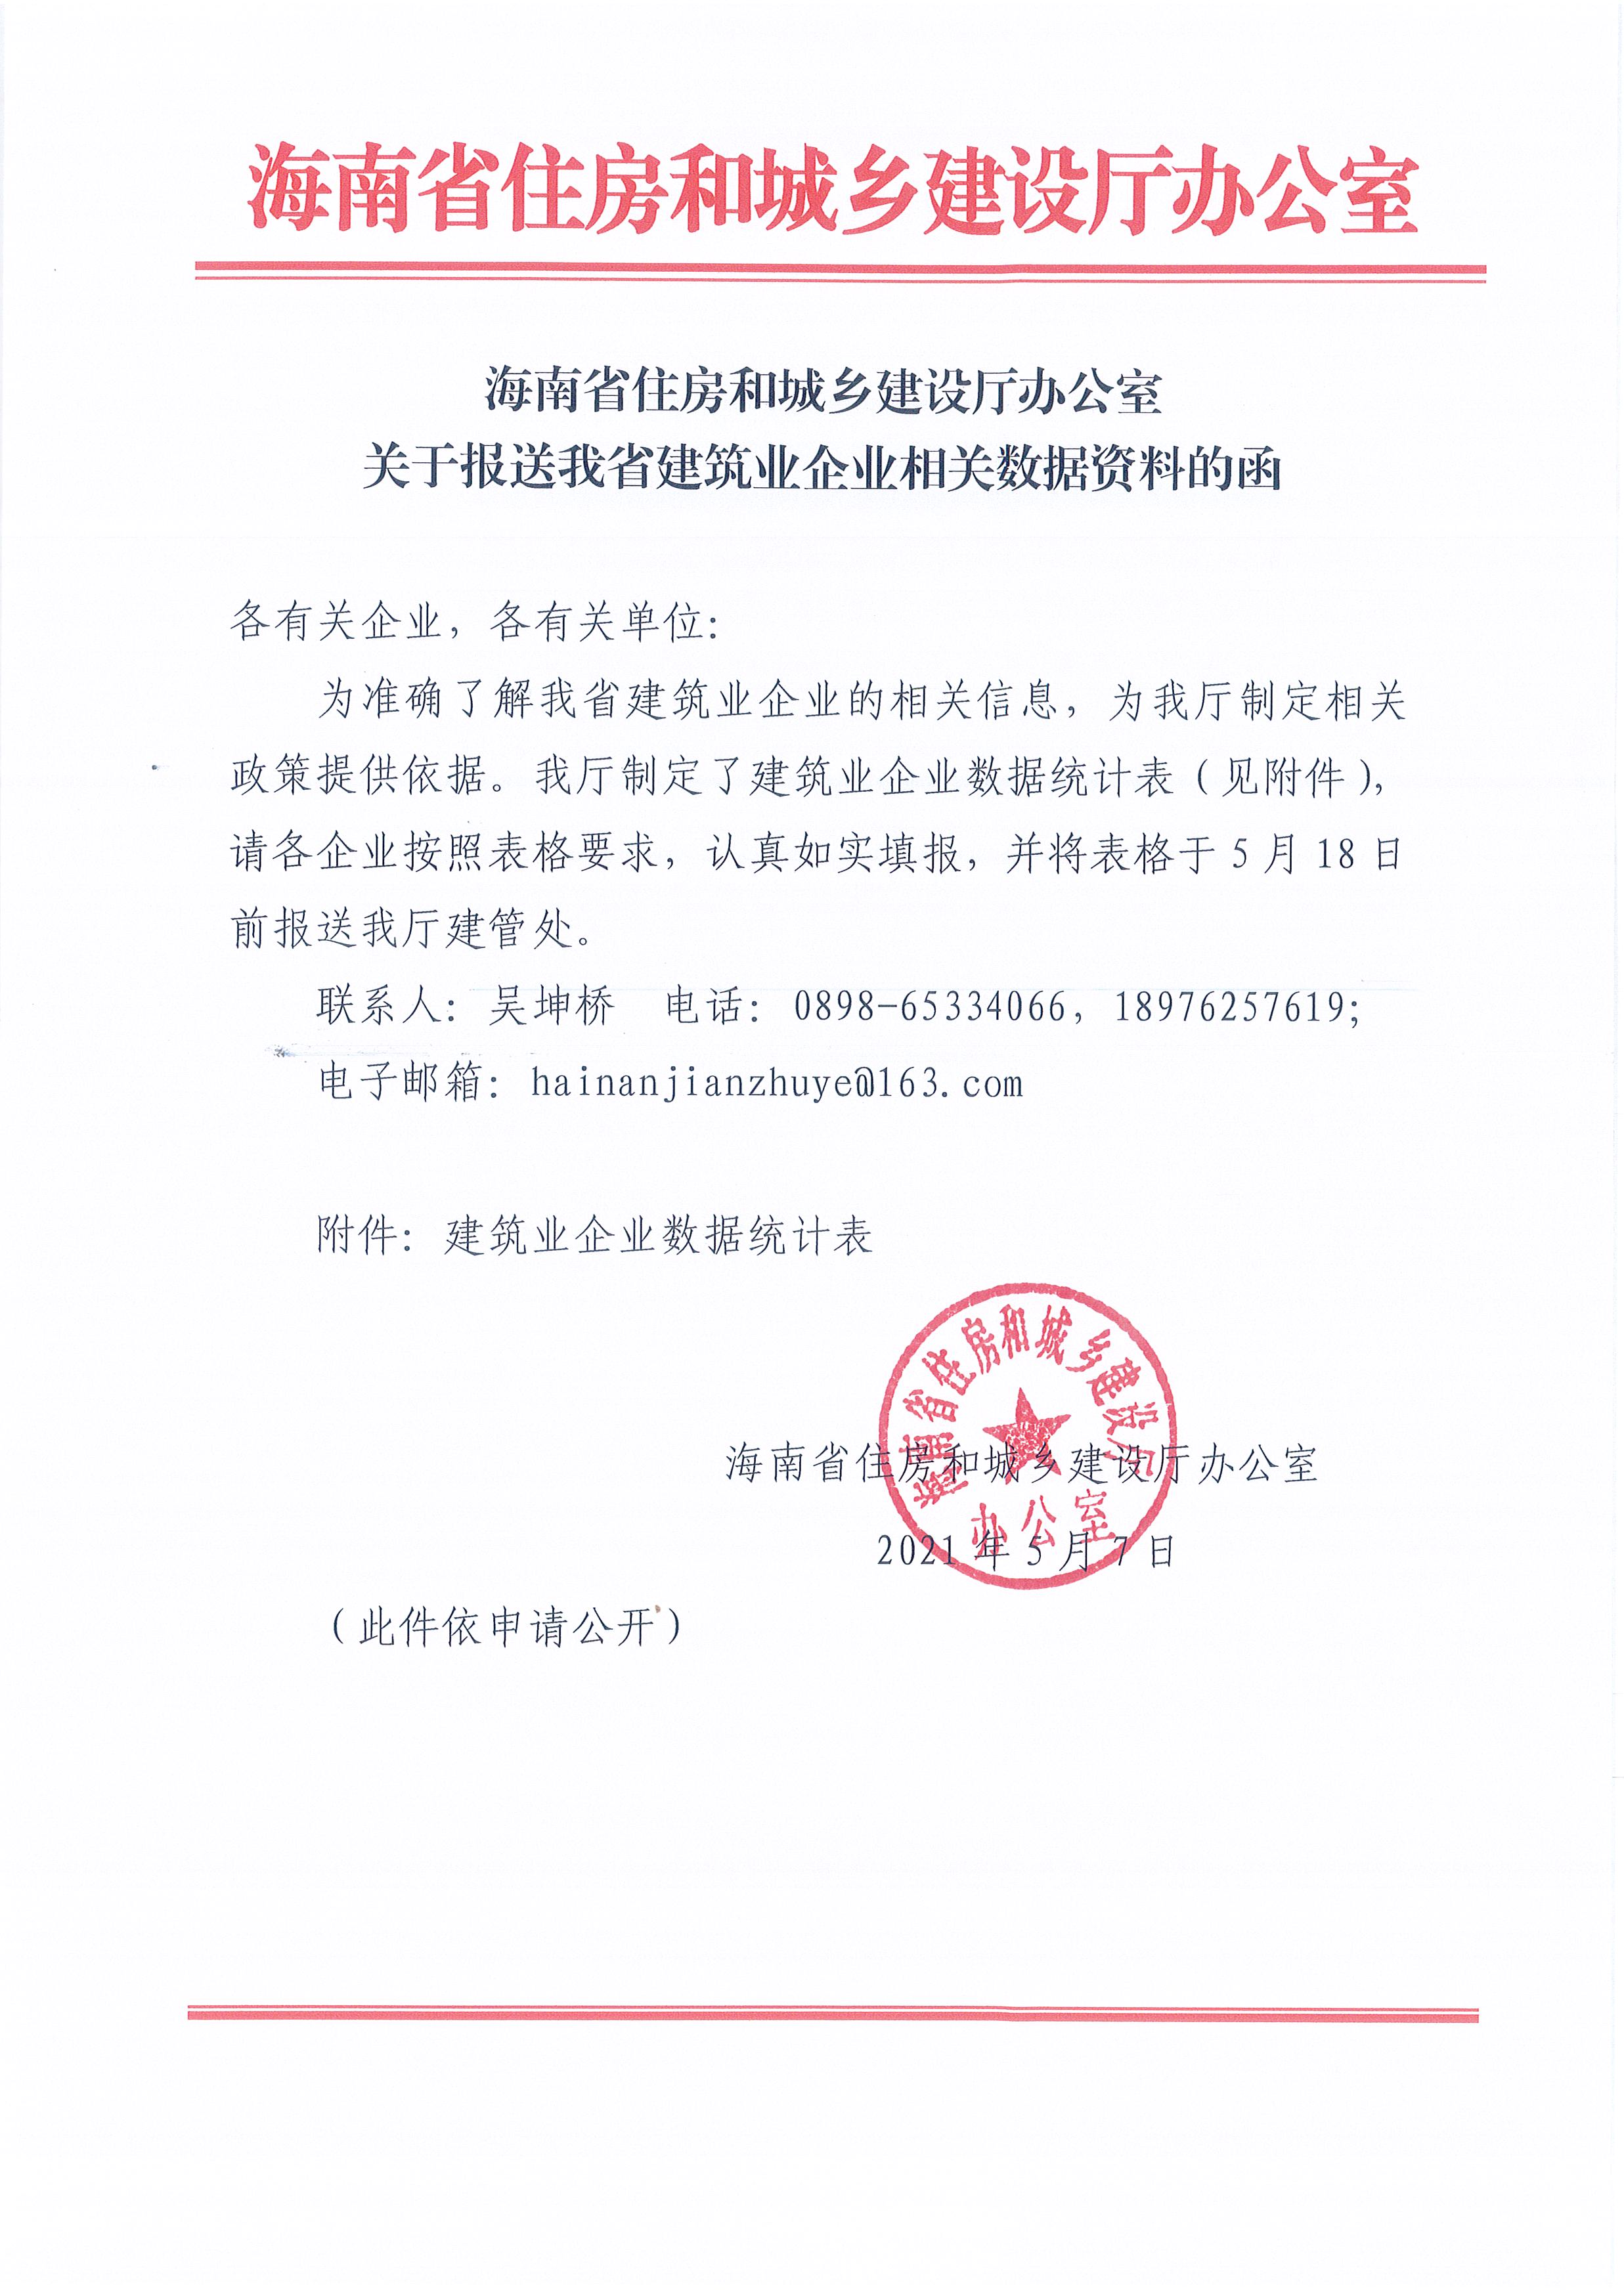 海南省住建厅关于报送建筑业企业相关数据资料的函